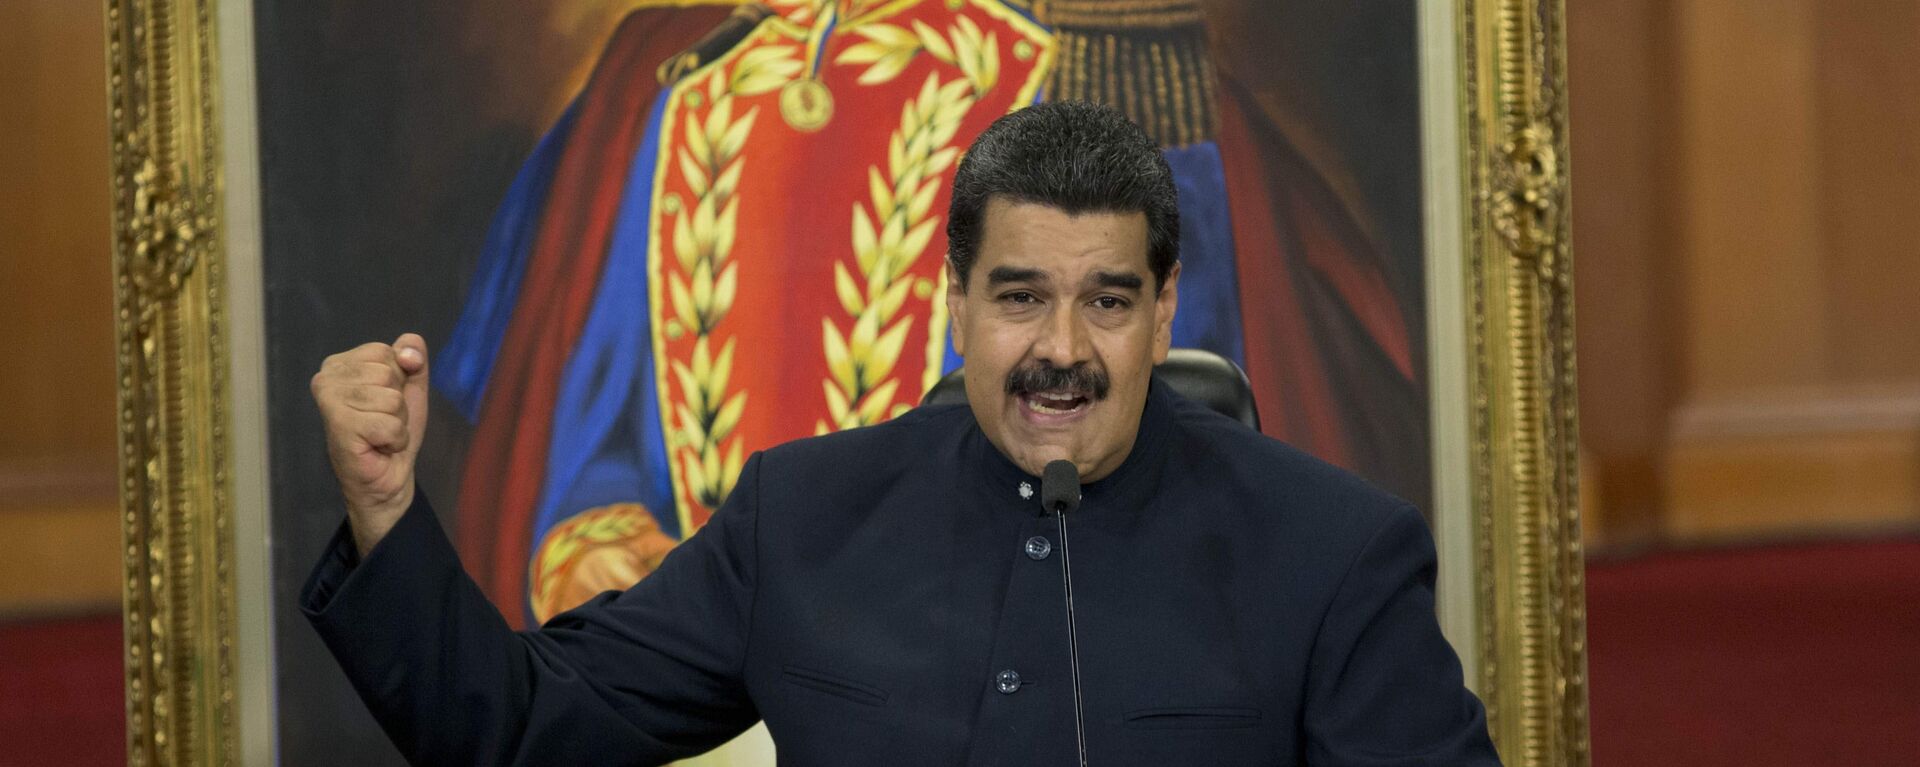 Nicolás Maduro, presidente de Venezuela - Sputnik Mundo, 1920, 14.08.2021